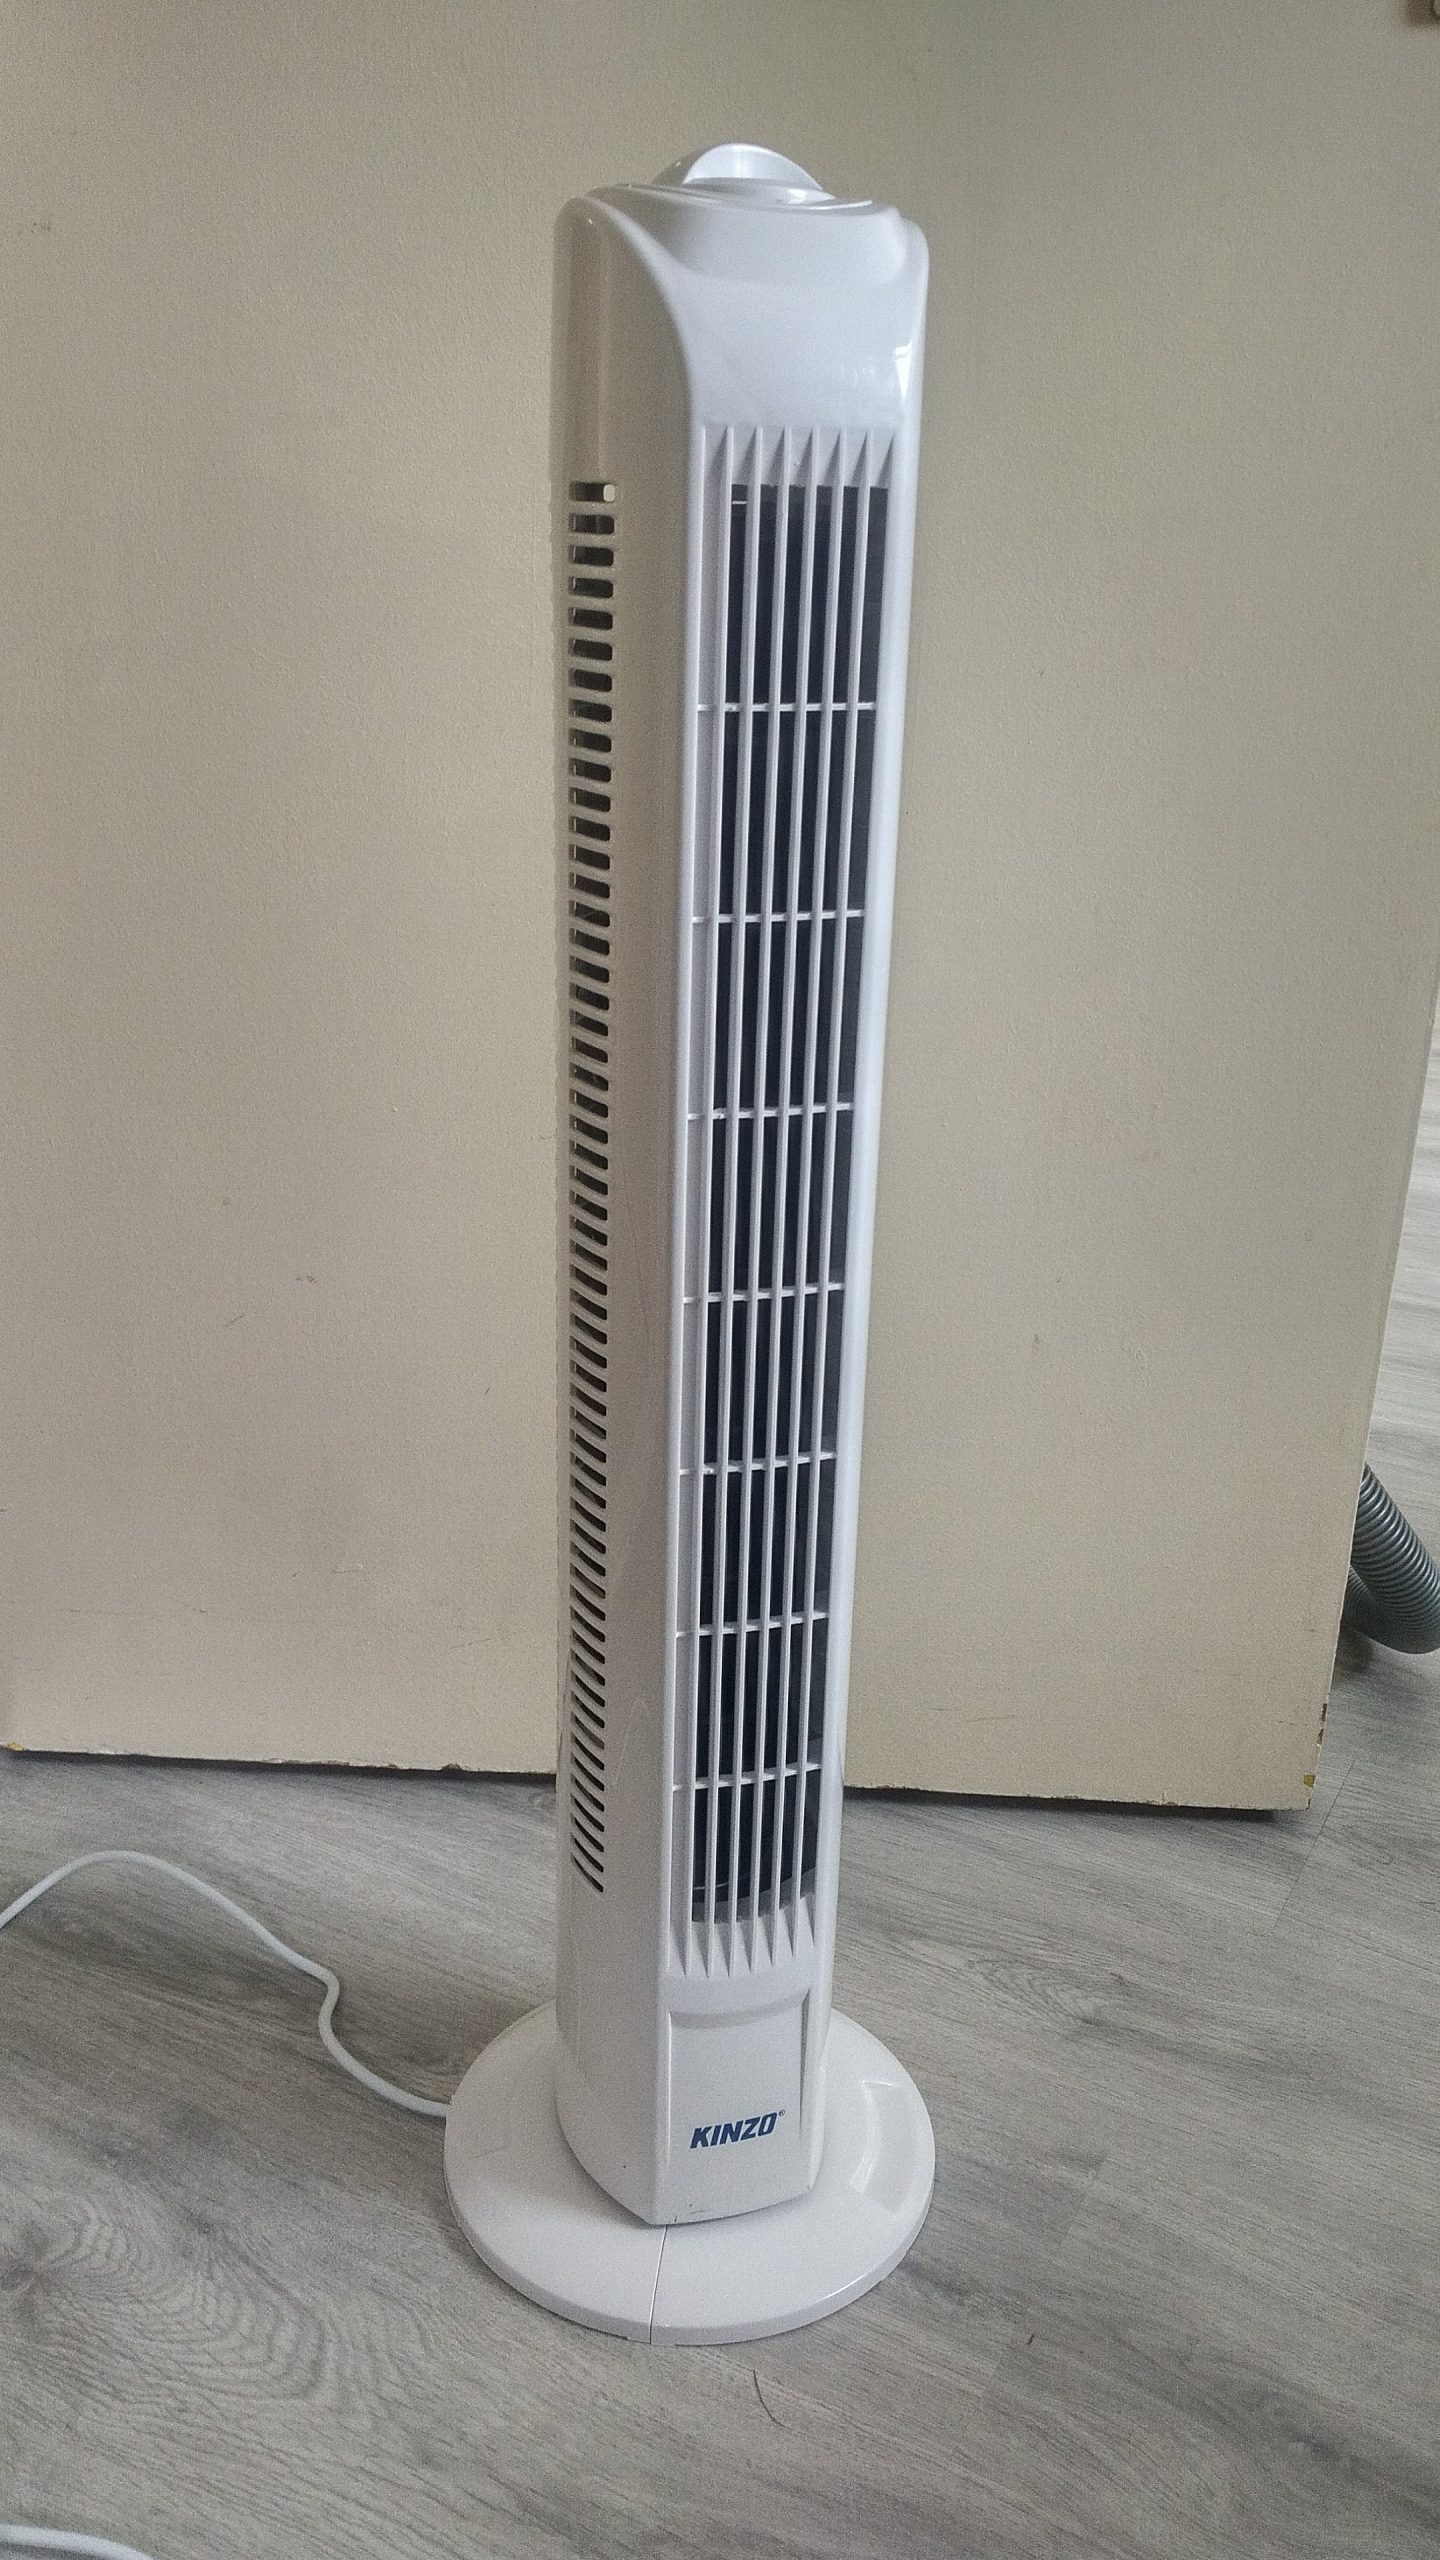 Filekinzo Cooling Tower Fan Oude Pekela 2018 07 pertaining to size 2160 X 3840